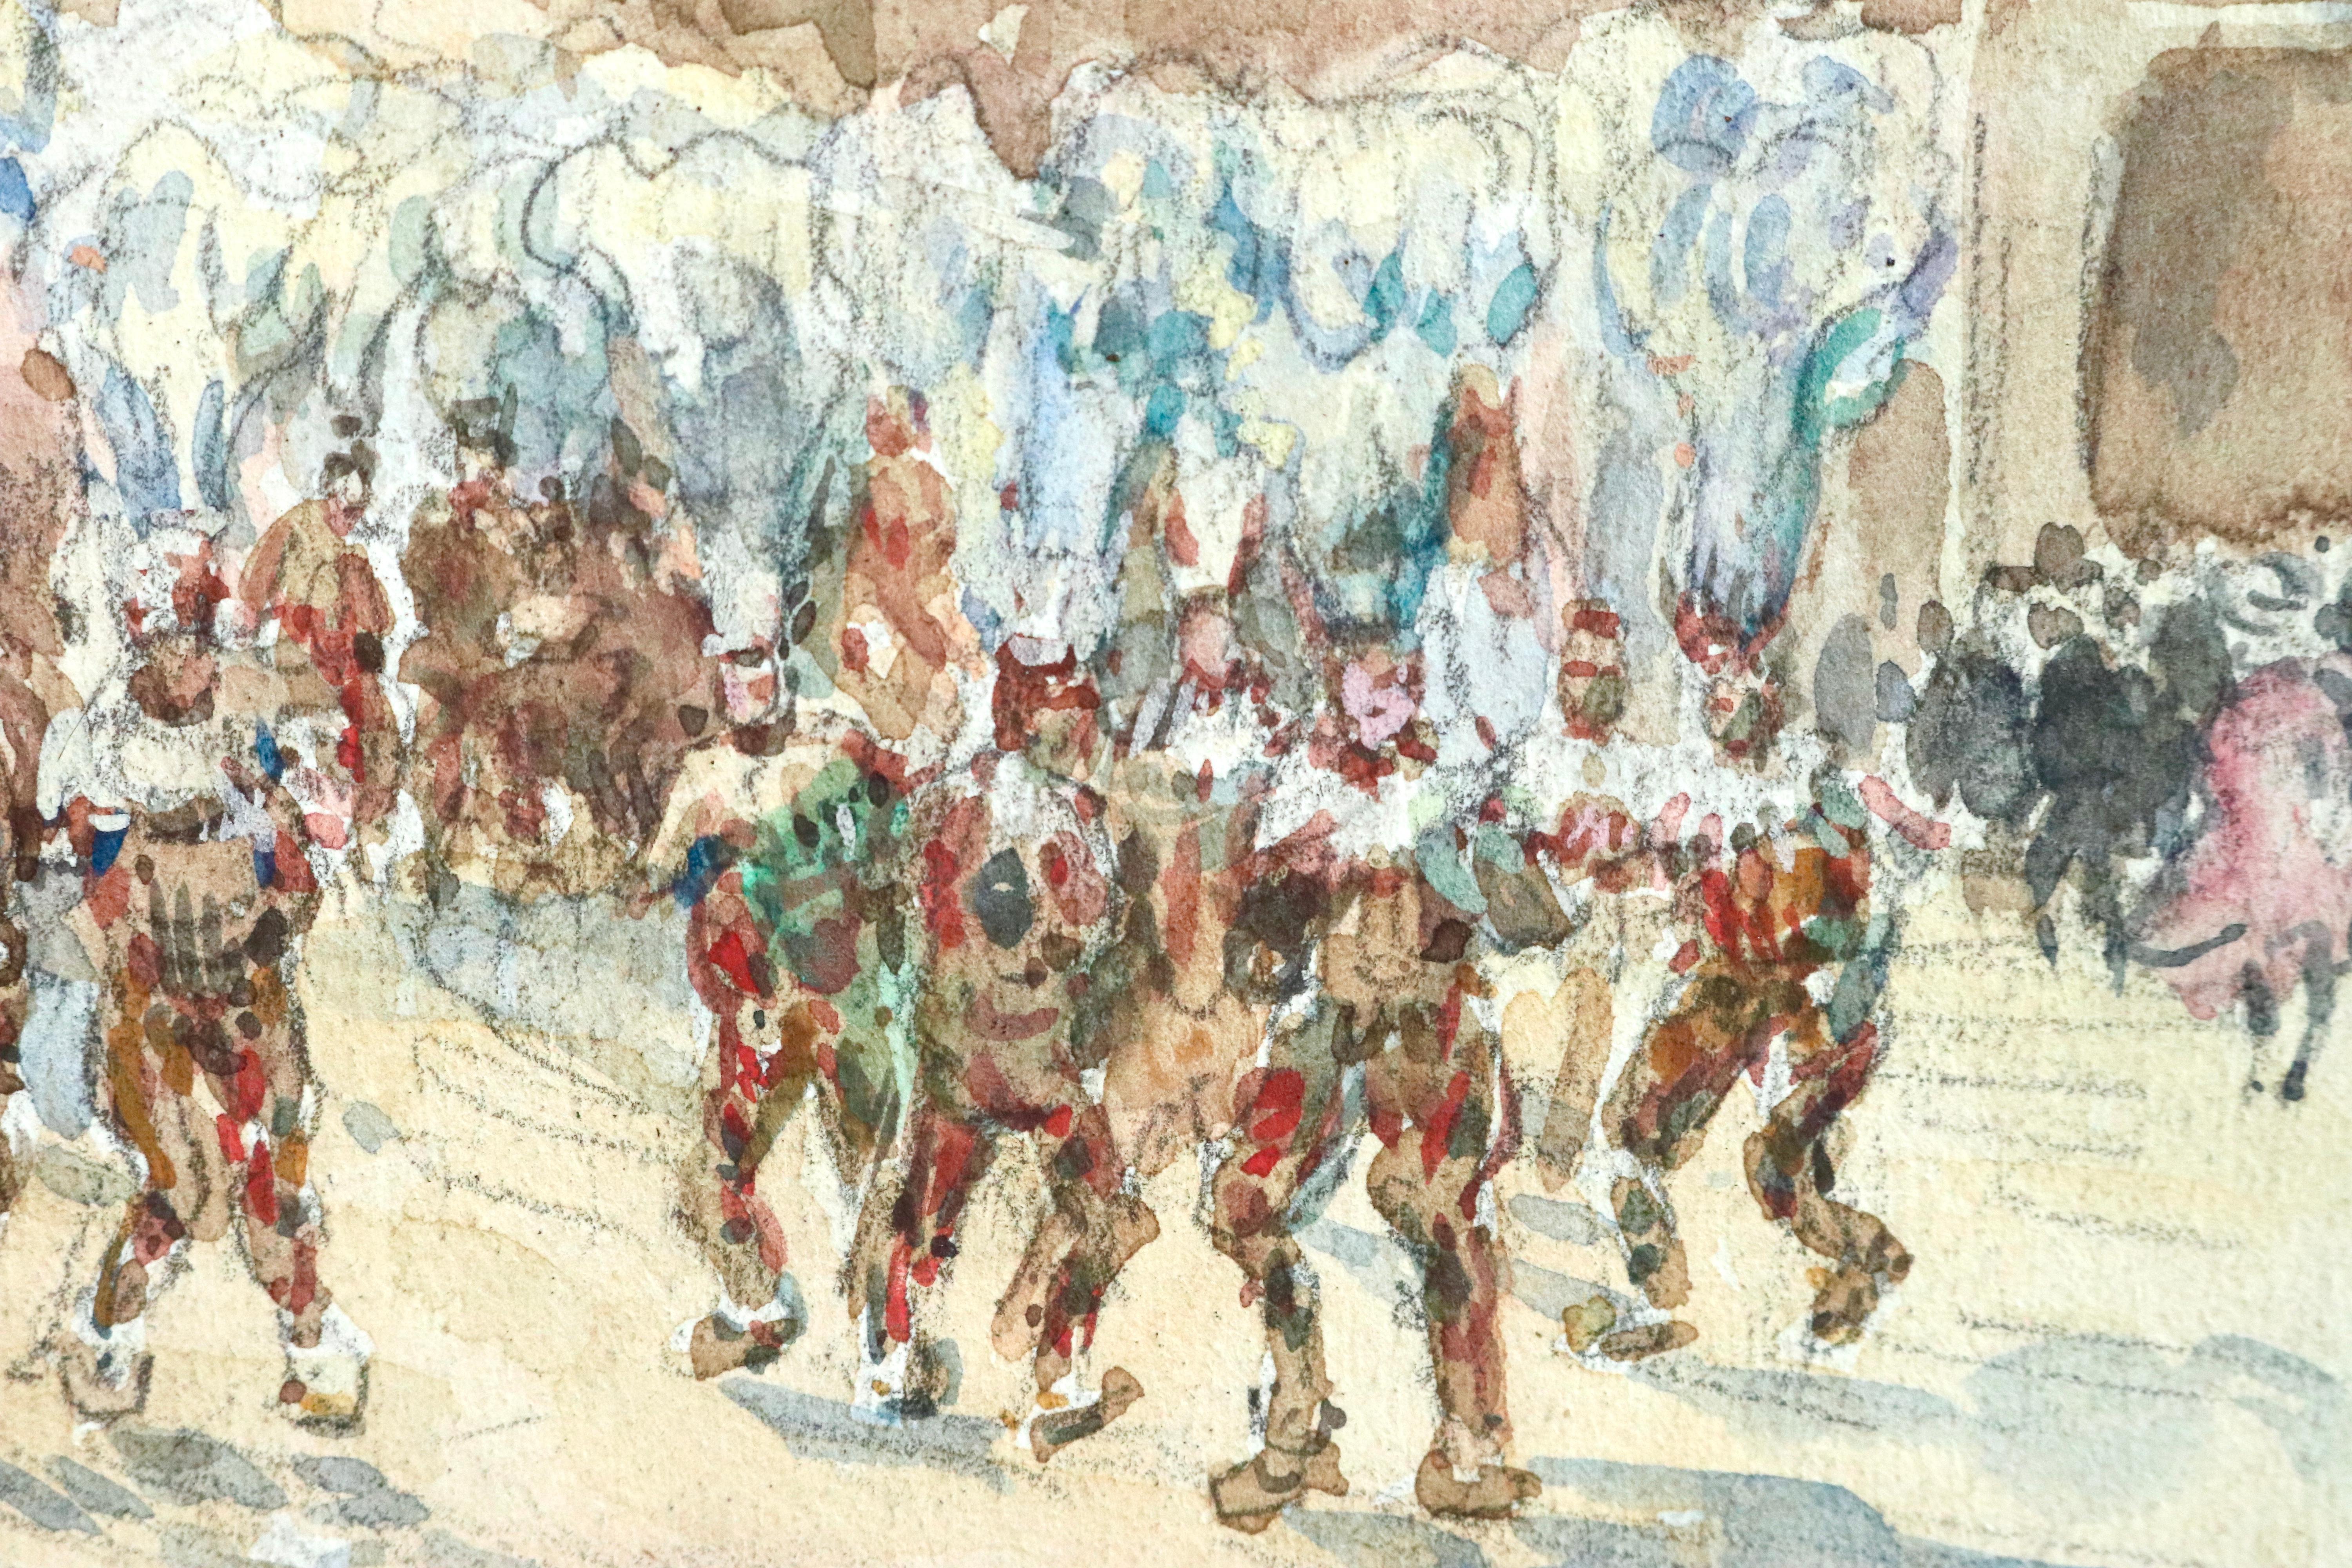 Aquarell auf Papier um 1920 von Henri Duhem mit der Darstellung der Gilles beim Karneval von Binche, Belgien. Signiert und betitelt unten links. Dieses Gemälde ist derzeit nicht gerahmt, aber ein passender Rahmen kann bei Bedarf beschafft